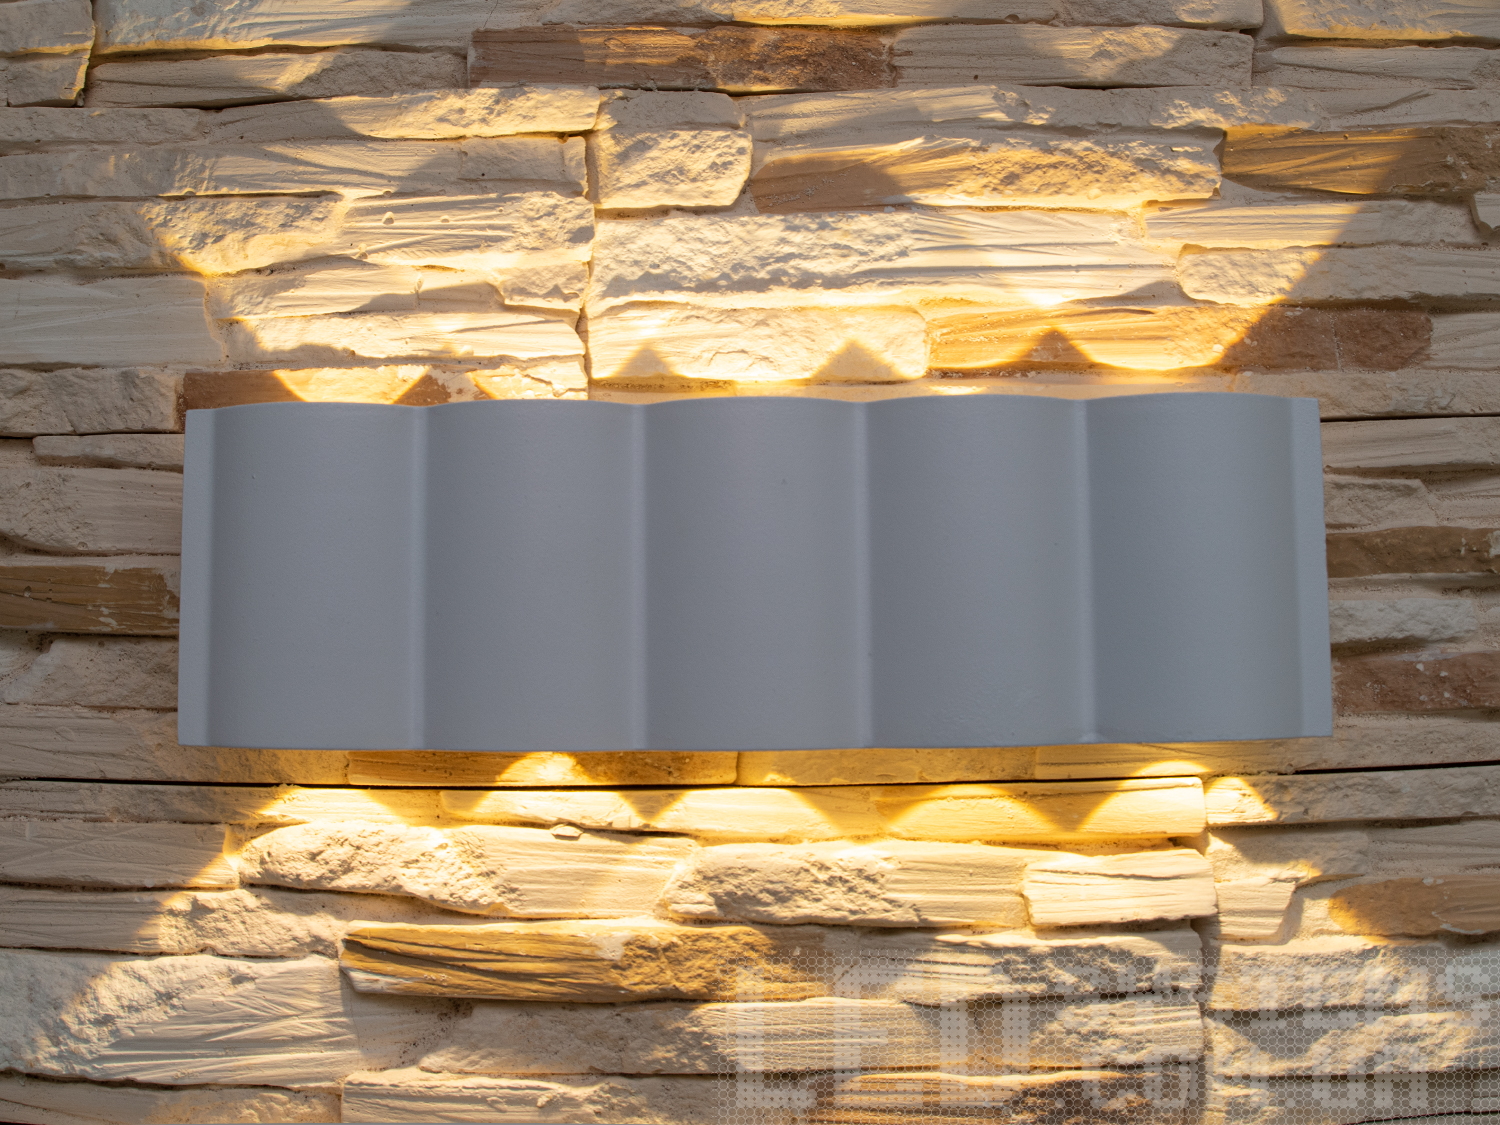 Фасадний світильник володіє малими розмірами та високою світловіддачею. Кут розкриття променя 60 °. Не виділяється на фасаді вдень, при цьому здатний повністю змінити вигляд будівлі вночі. На відміну від своїх попередників світлодіодні світильники для архітектурного підсвічування практично не виступають від стіни, а значить, світло практично повністю поширюється в площині стіни. Не потрапляє на віконні укоси, і, відповідно, не призводить до світлового забруднення приміщень усередині будівлі як звичайні вуличні ліхтарі.
Простір перед світильником м'яко освітлюється світлом, що відбивається від поверхні стіни. Такі світильники не створюють дискомфорту для очей у темну пору доби.

Також може бути використаний у приміщенні. У сучасному інтер'єрі такий світильник створить невимушене бічне освітлення і стане стильною заміною звичайних бра.